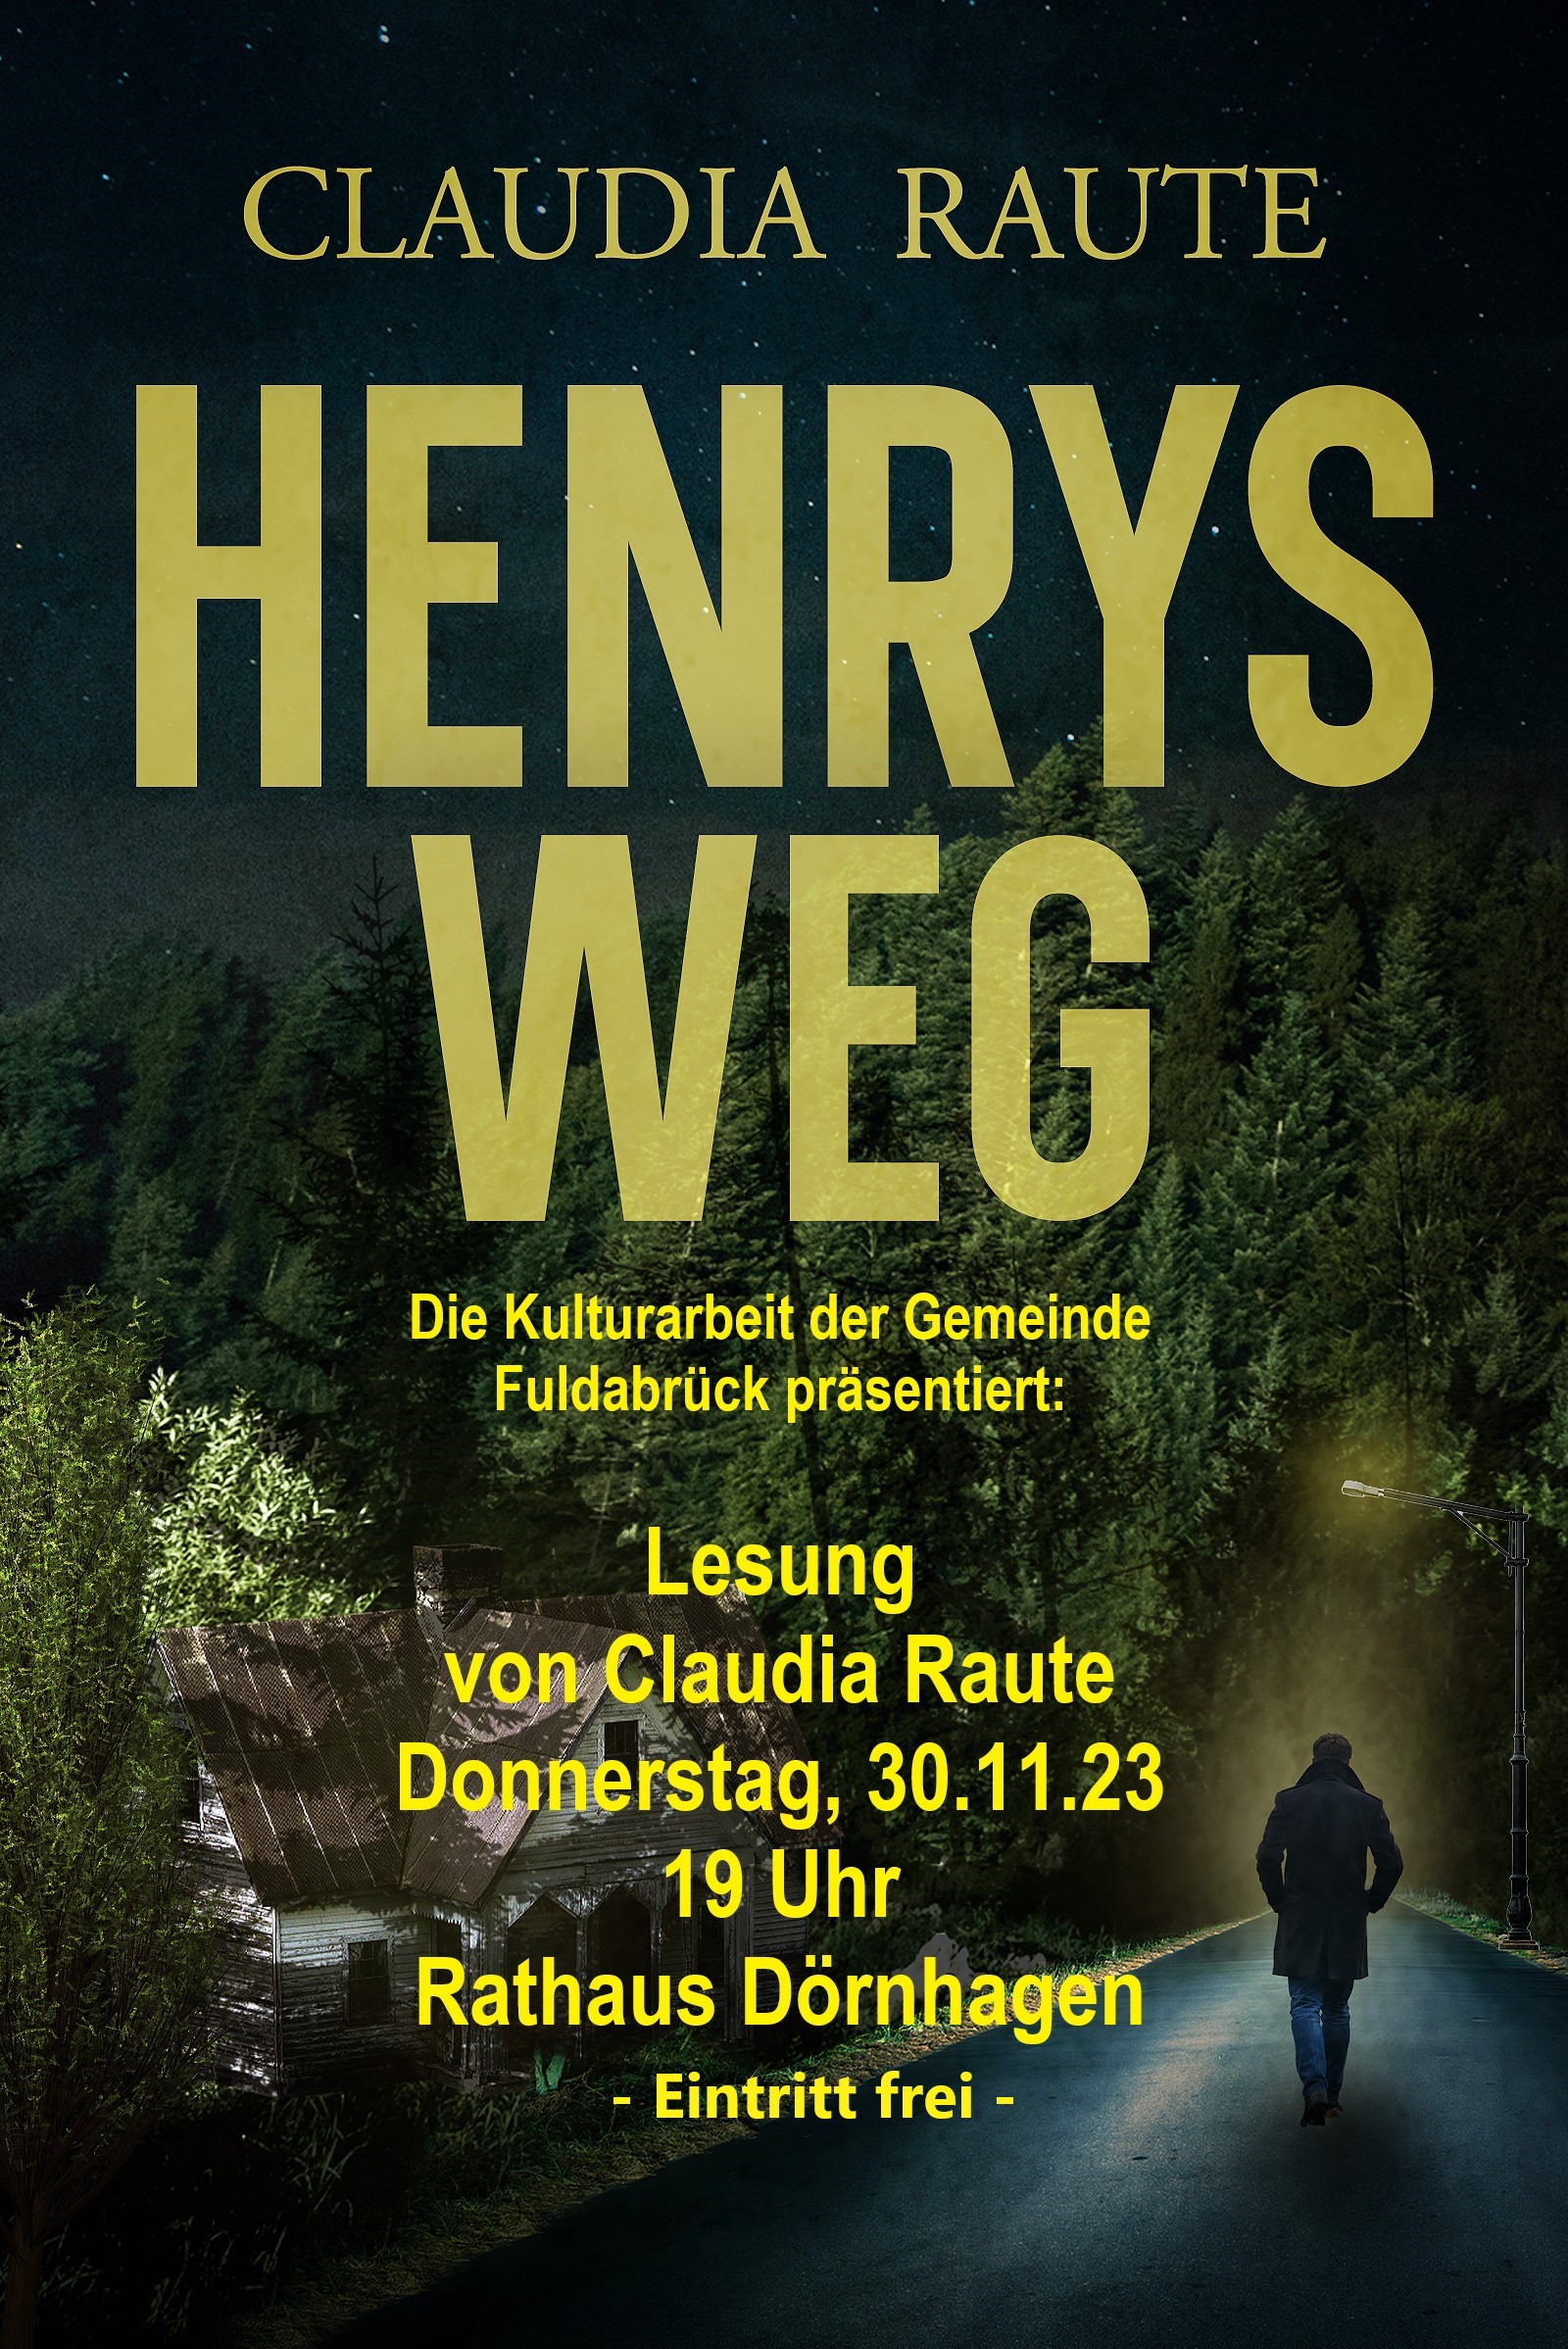 Buchcover "Henrys Weg" von Claudia Raute mit Datum und Uhrzeit der Lesung